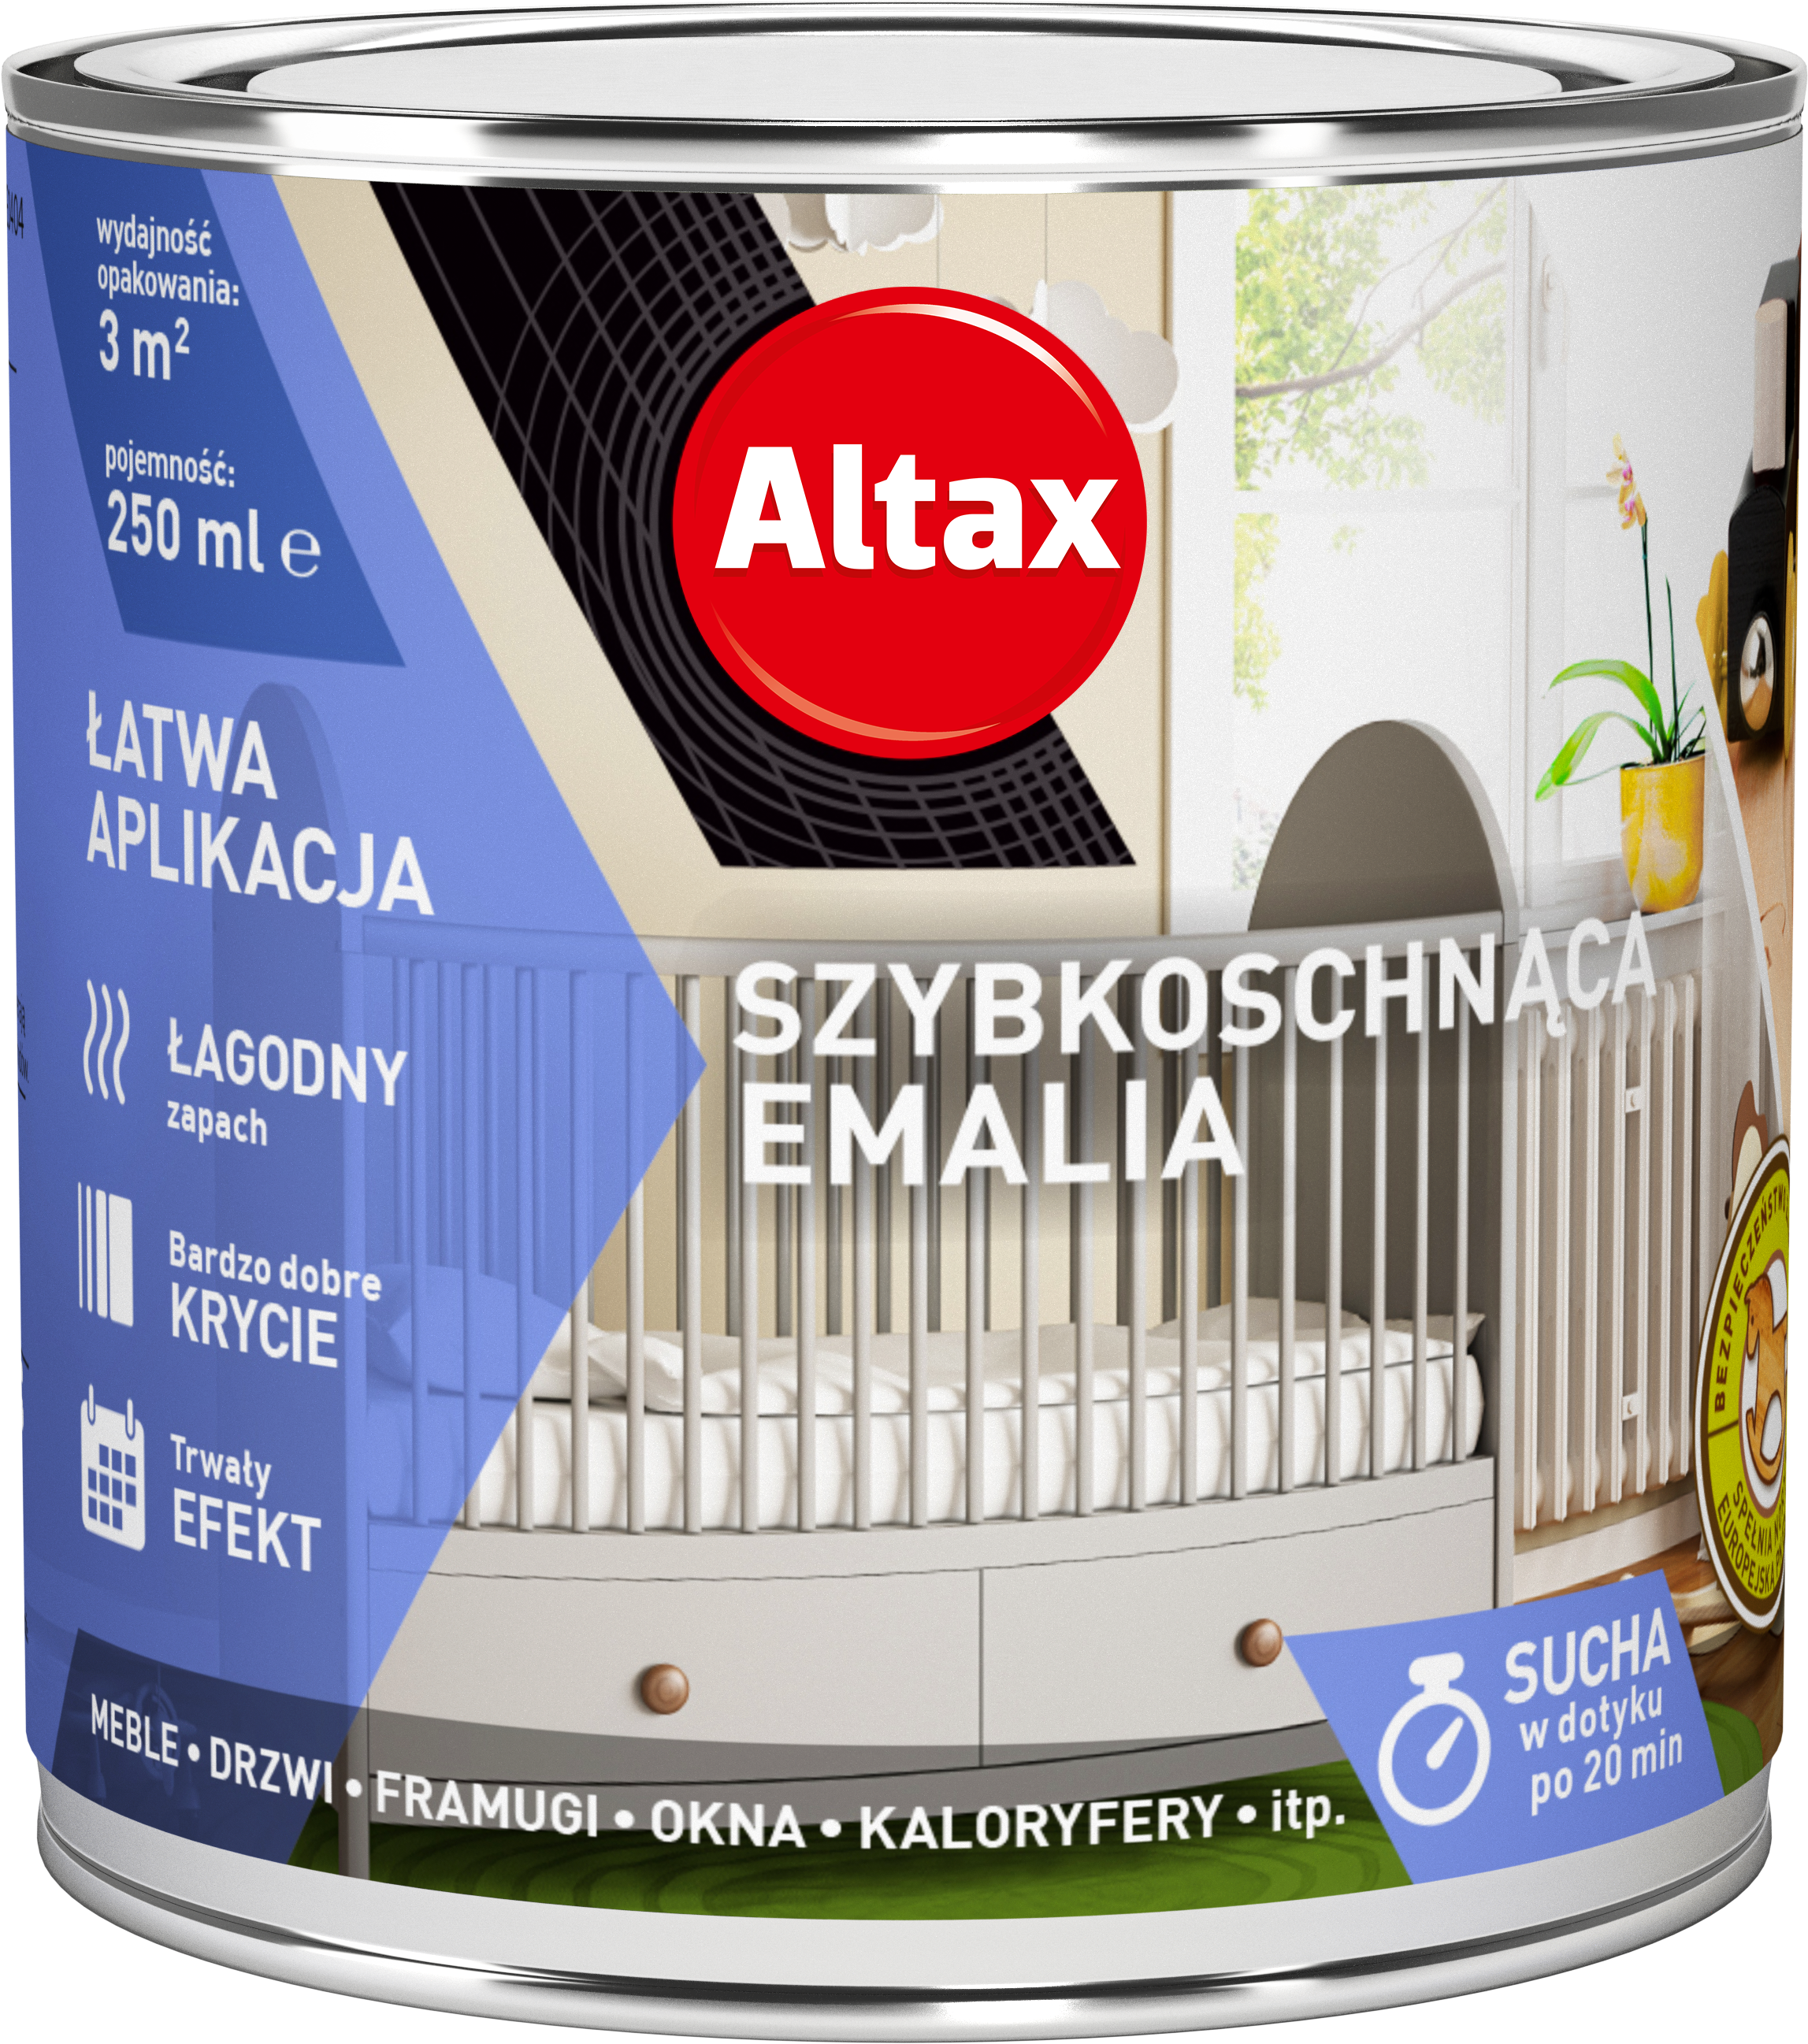 ALTAX-szybkoschnaca-emalia-do-wnetrz-250ml-02